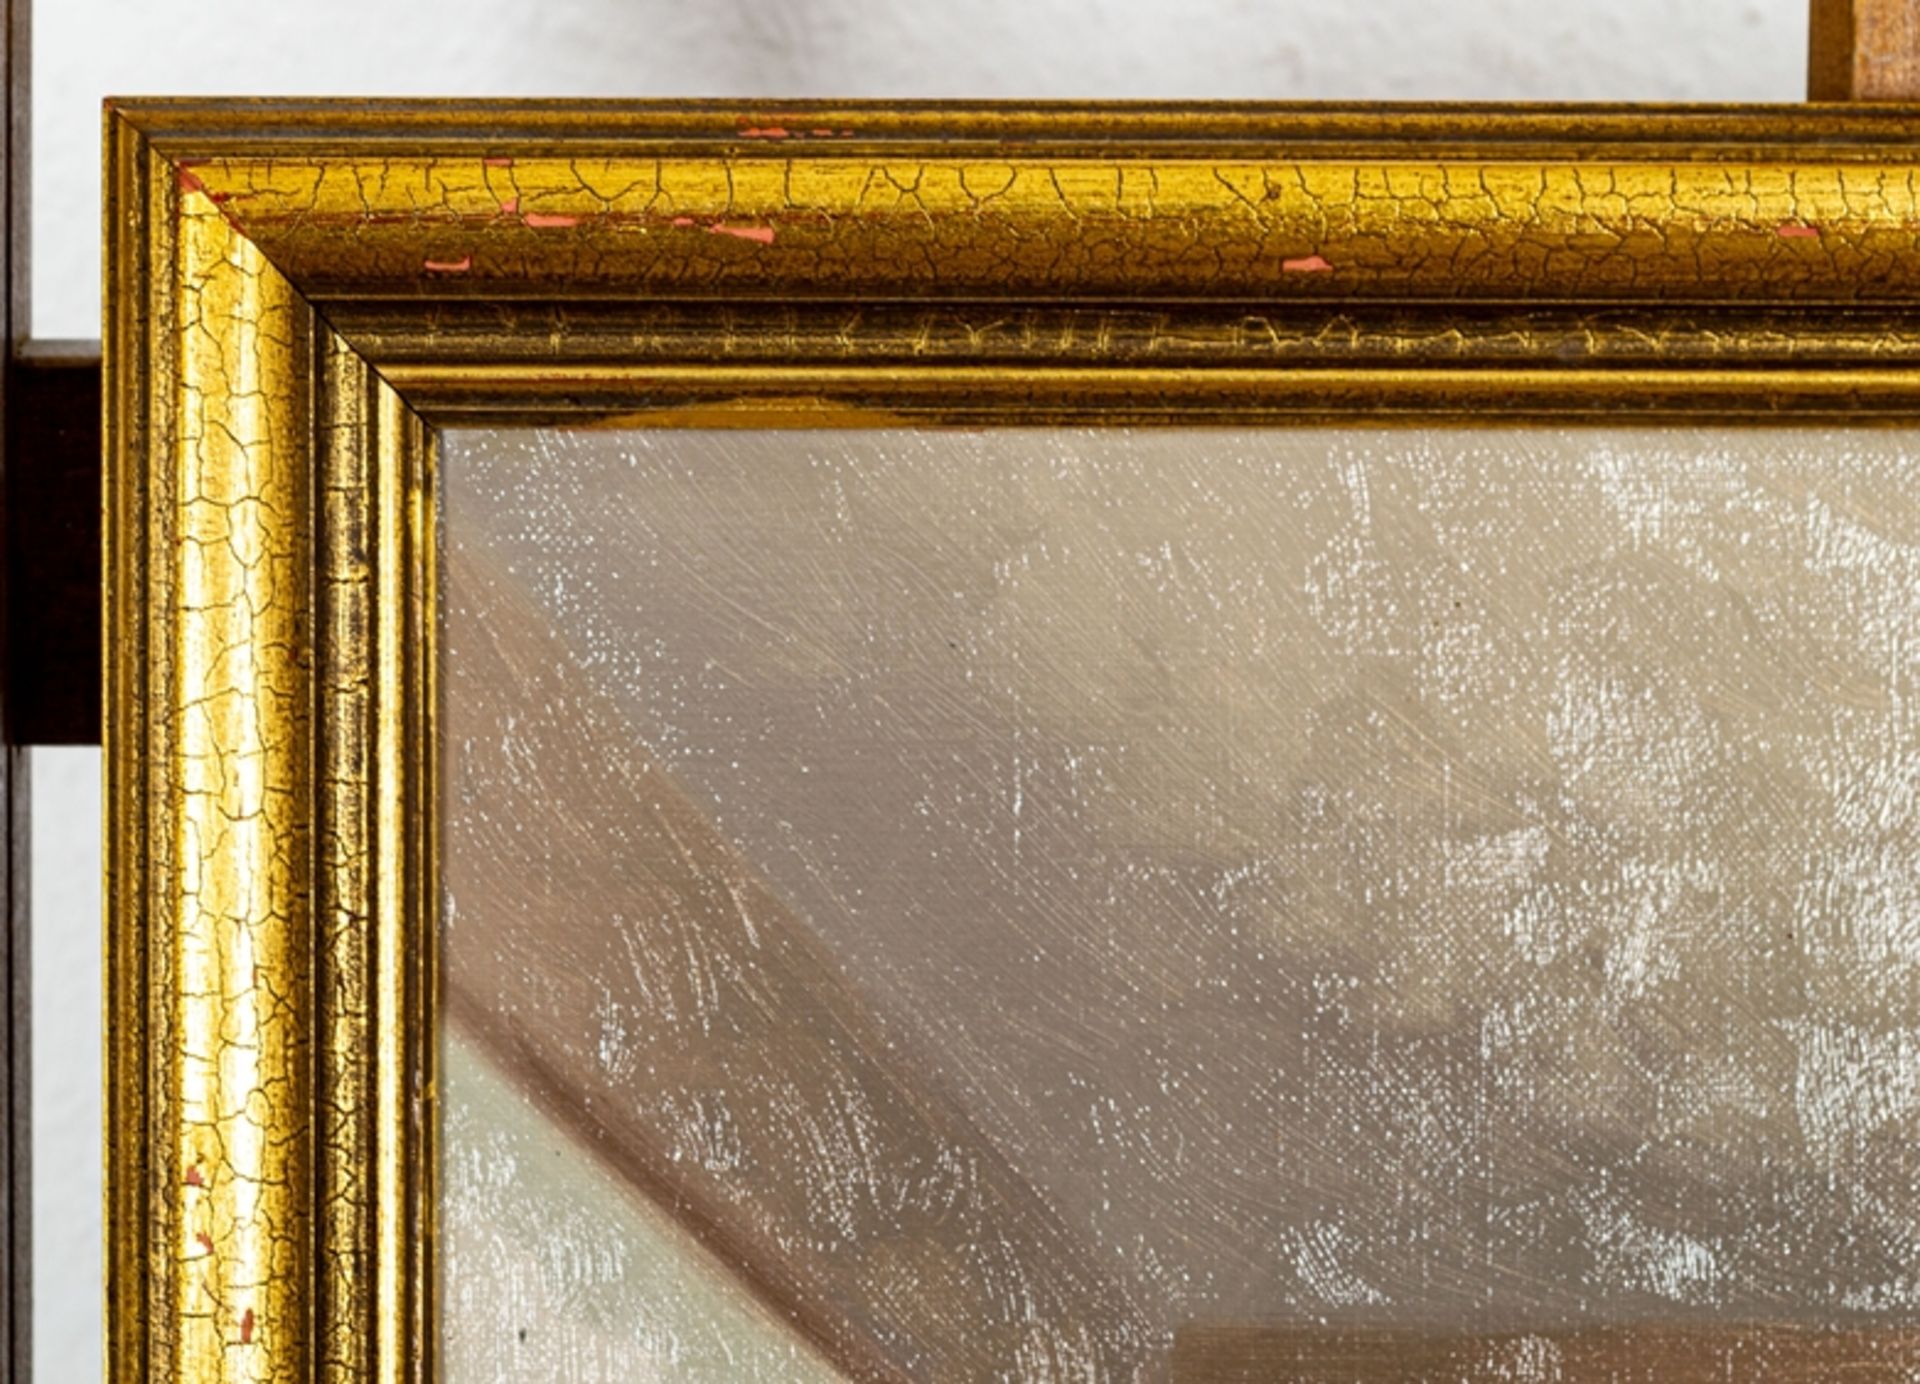 "Interieur mit Louis XV Kommode", Gemälde, Mitte 20. Jhd., Öl auf Leinwand, ca. - Bild 5 aus 6